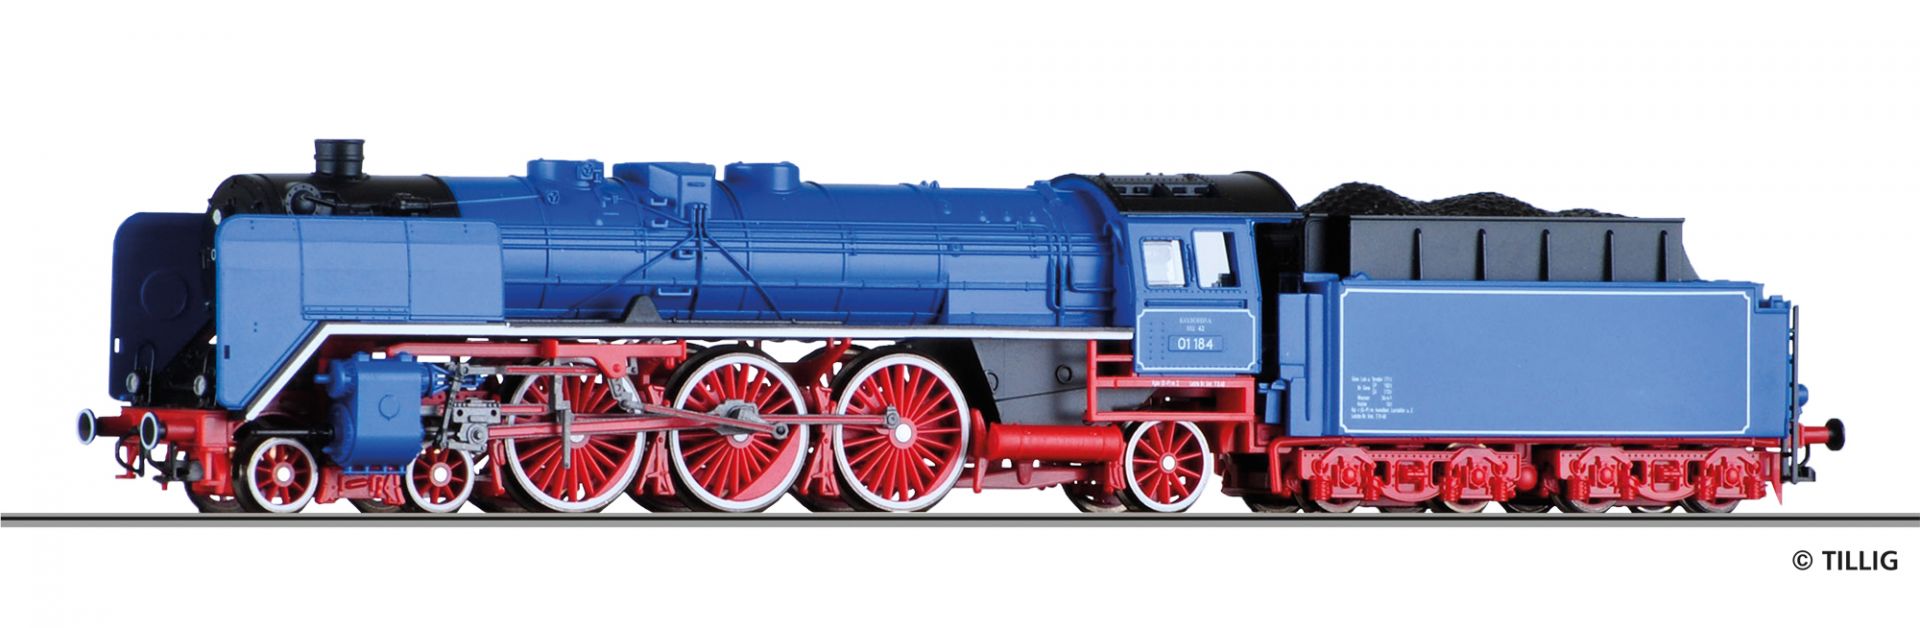 502098 | Dampflokomotive -werksseitig ausverkauft-